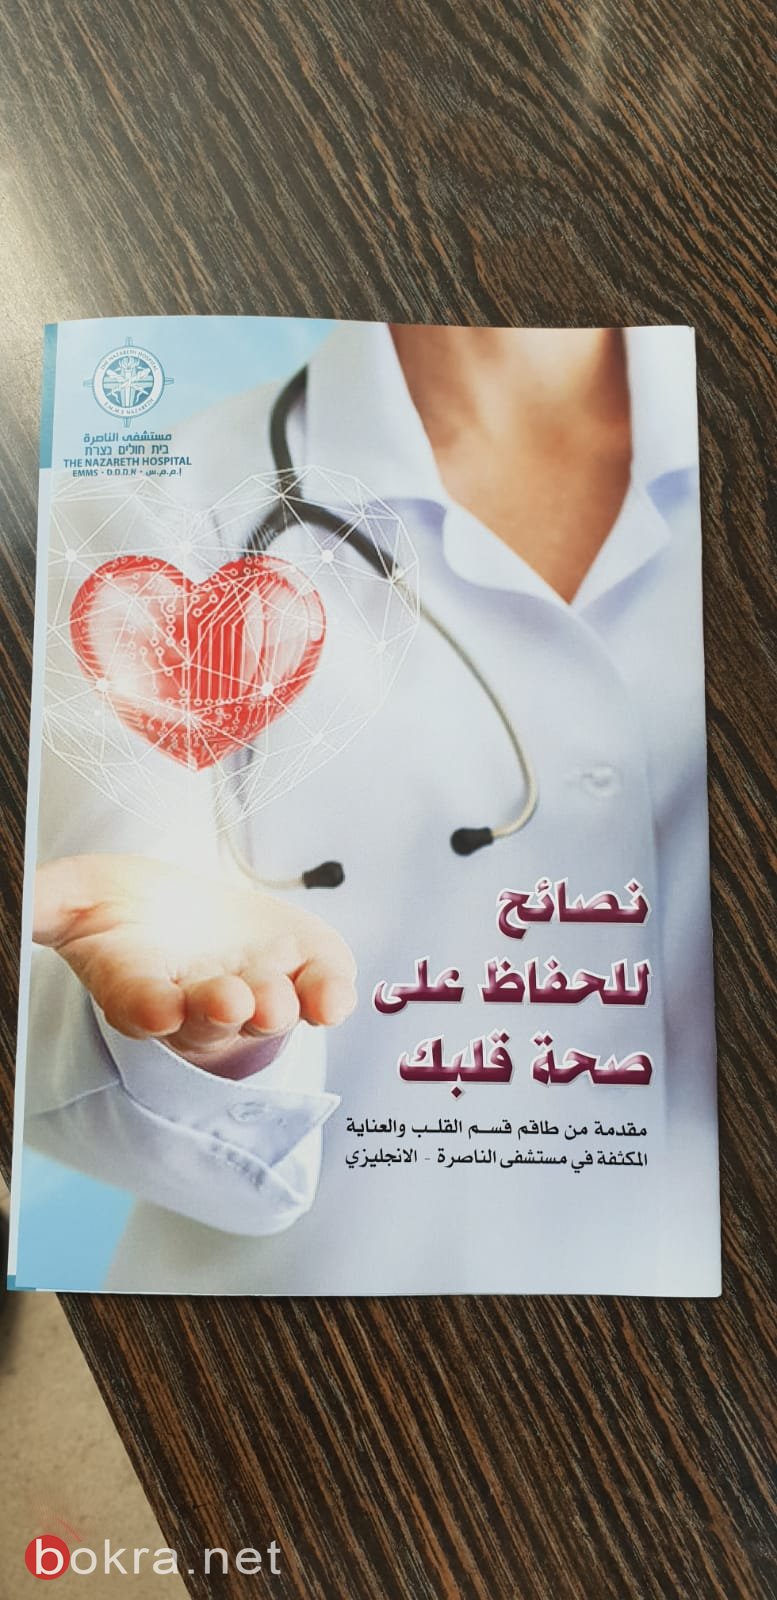  يوم صحة القلب في بلدية الناصرة-0